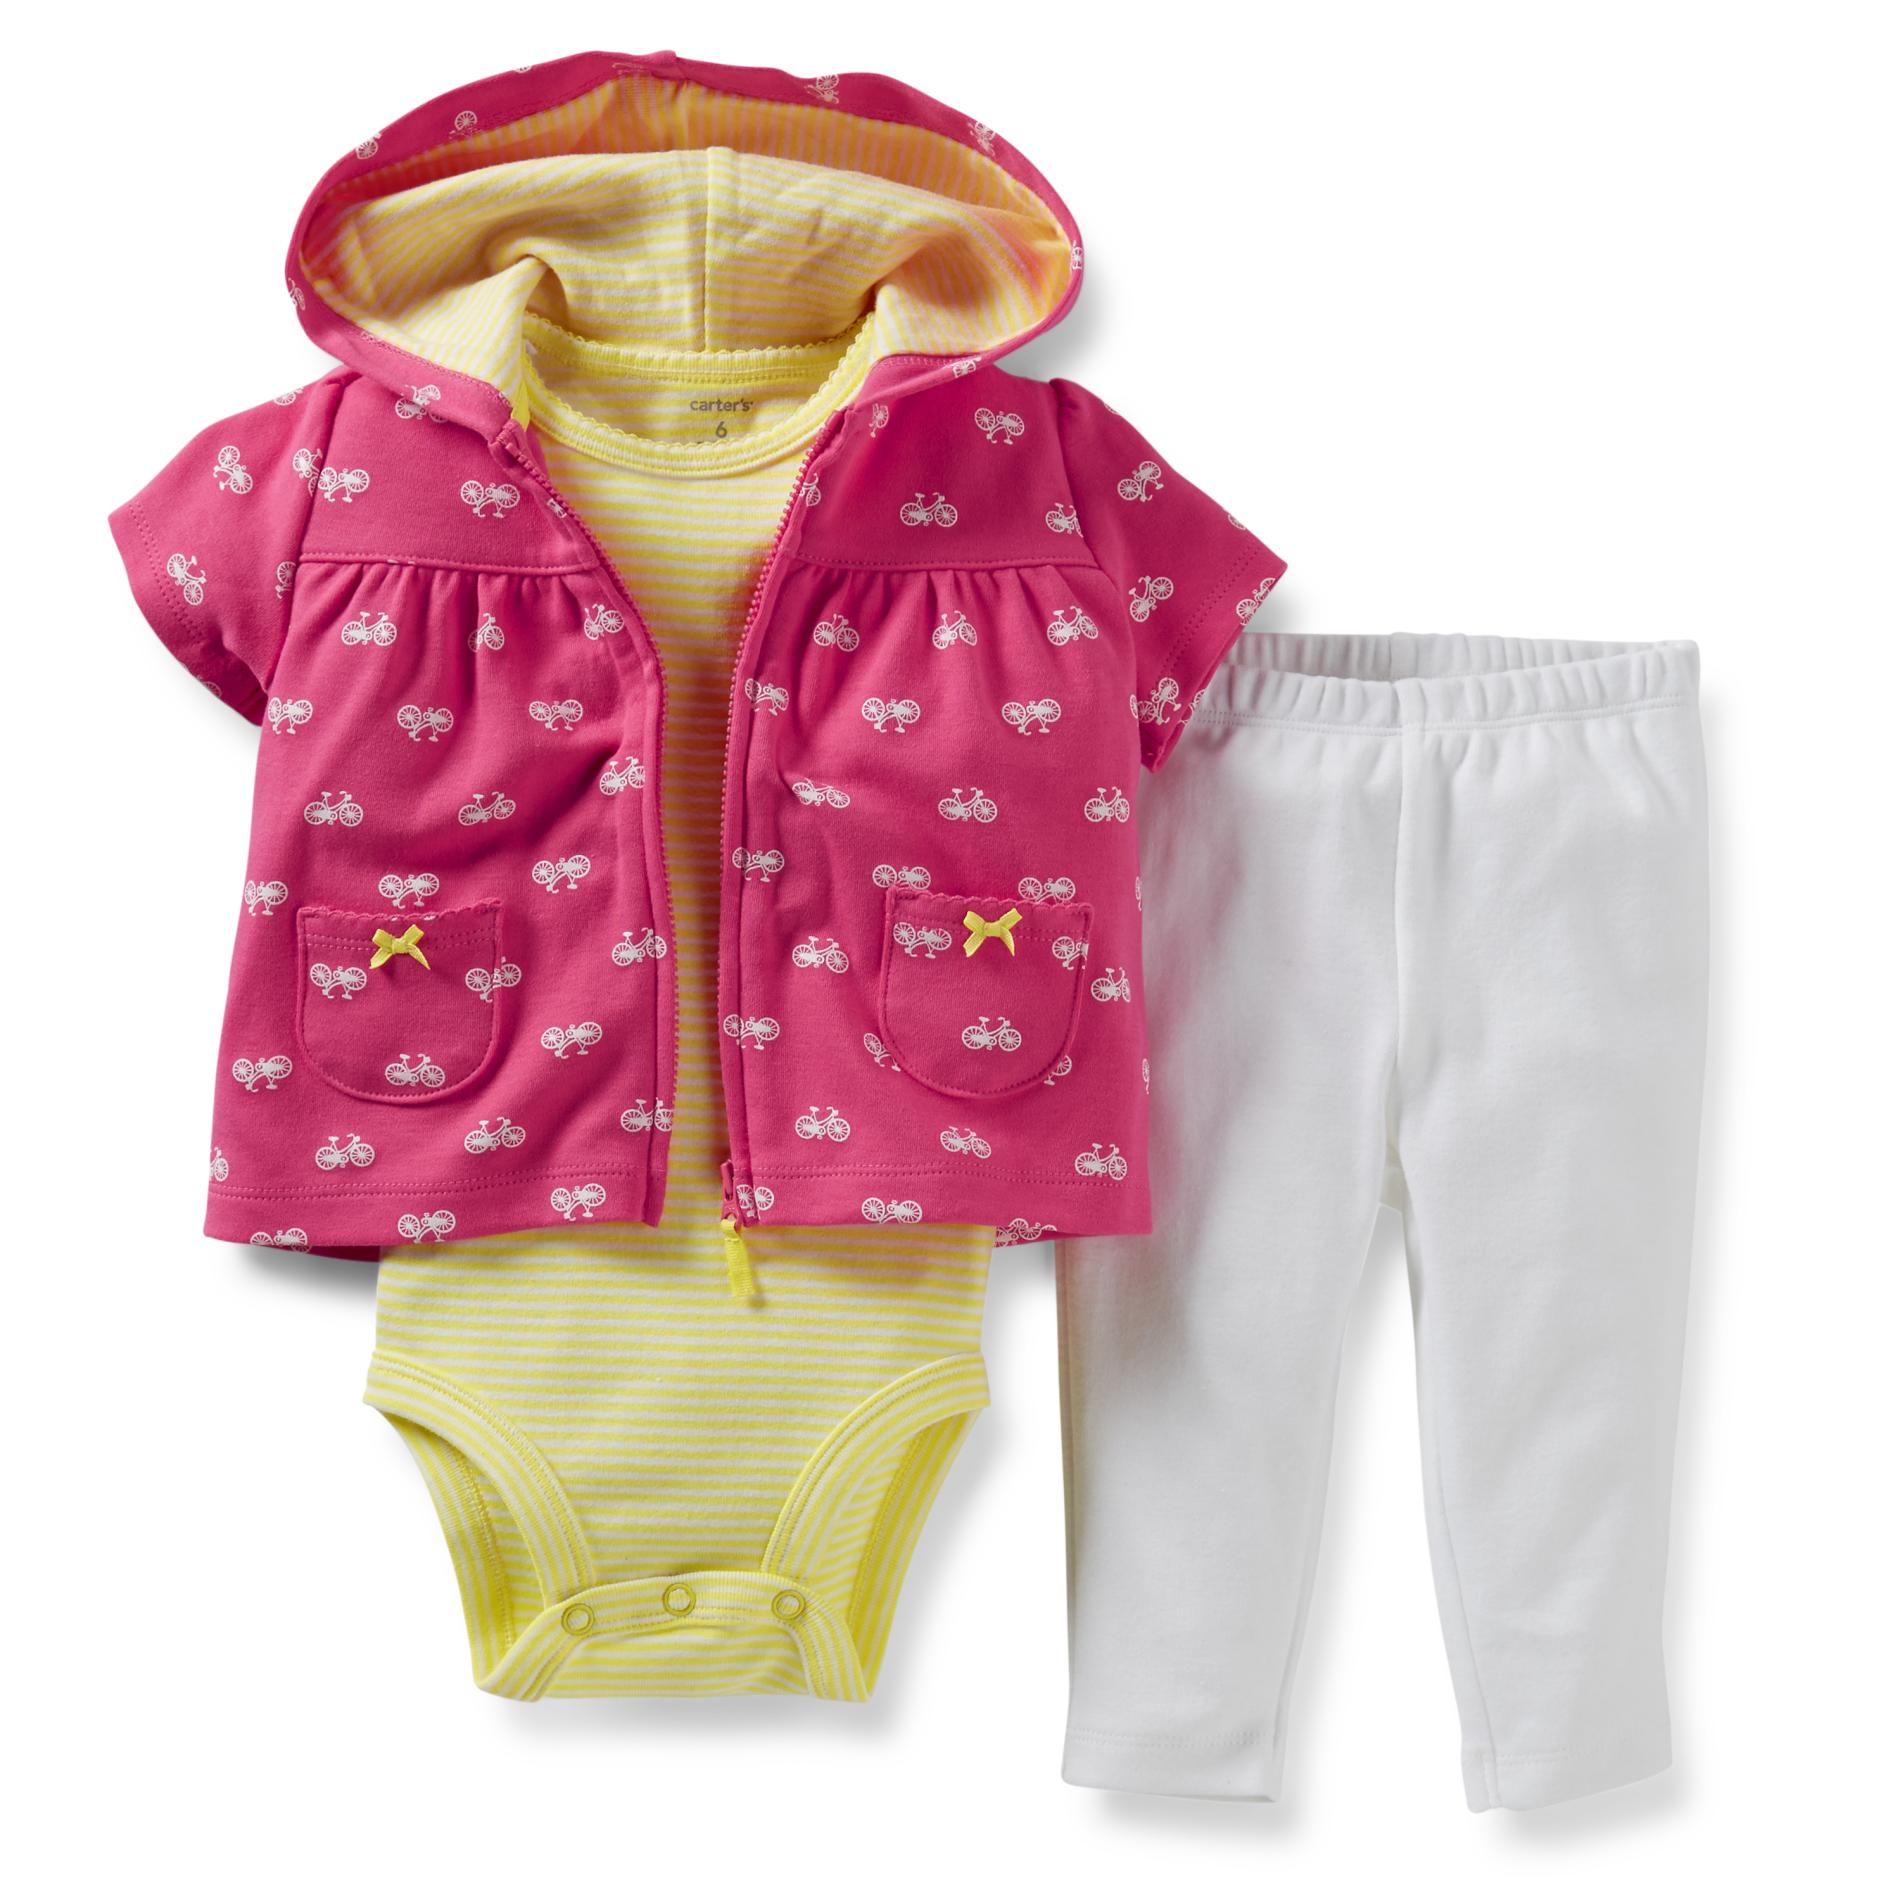 Carter's Newborn & Infant Girl's Bodysuit  Hoodie Jacket & Leggings - Bicycle Print